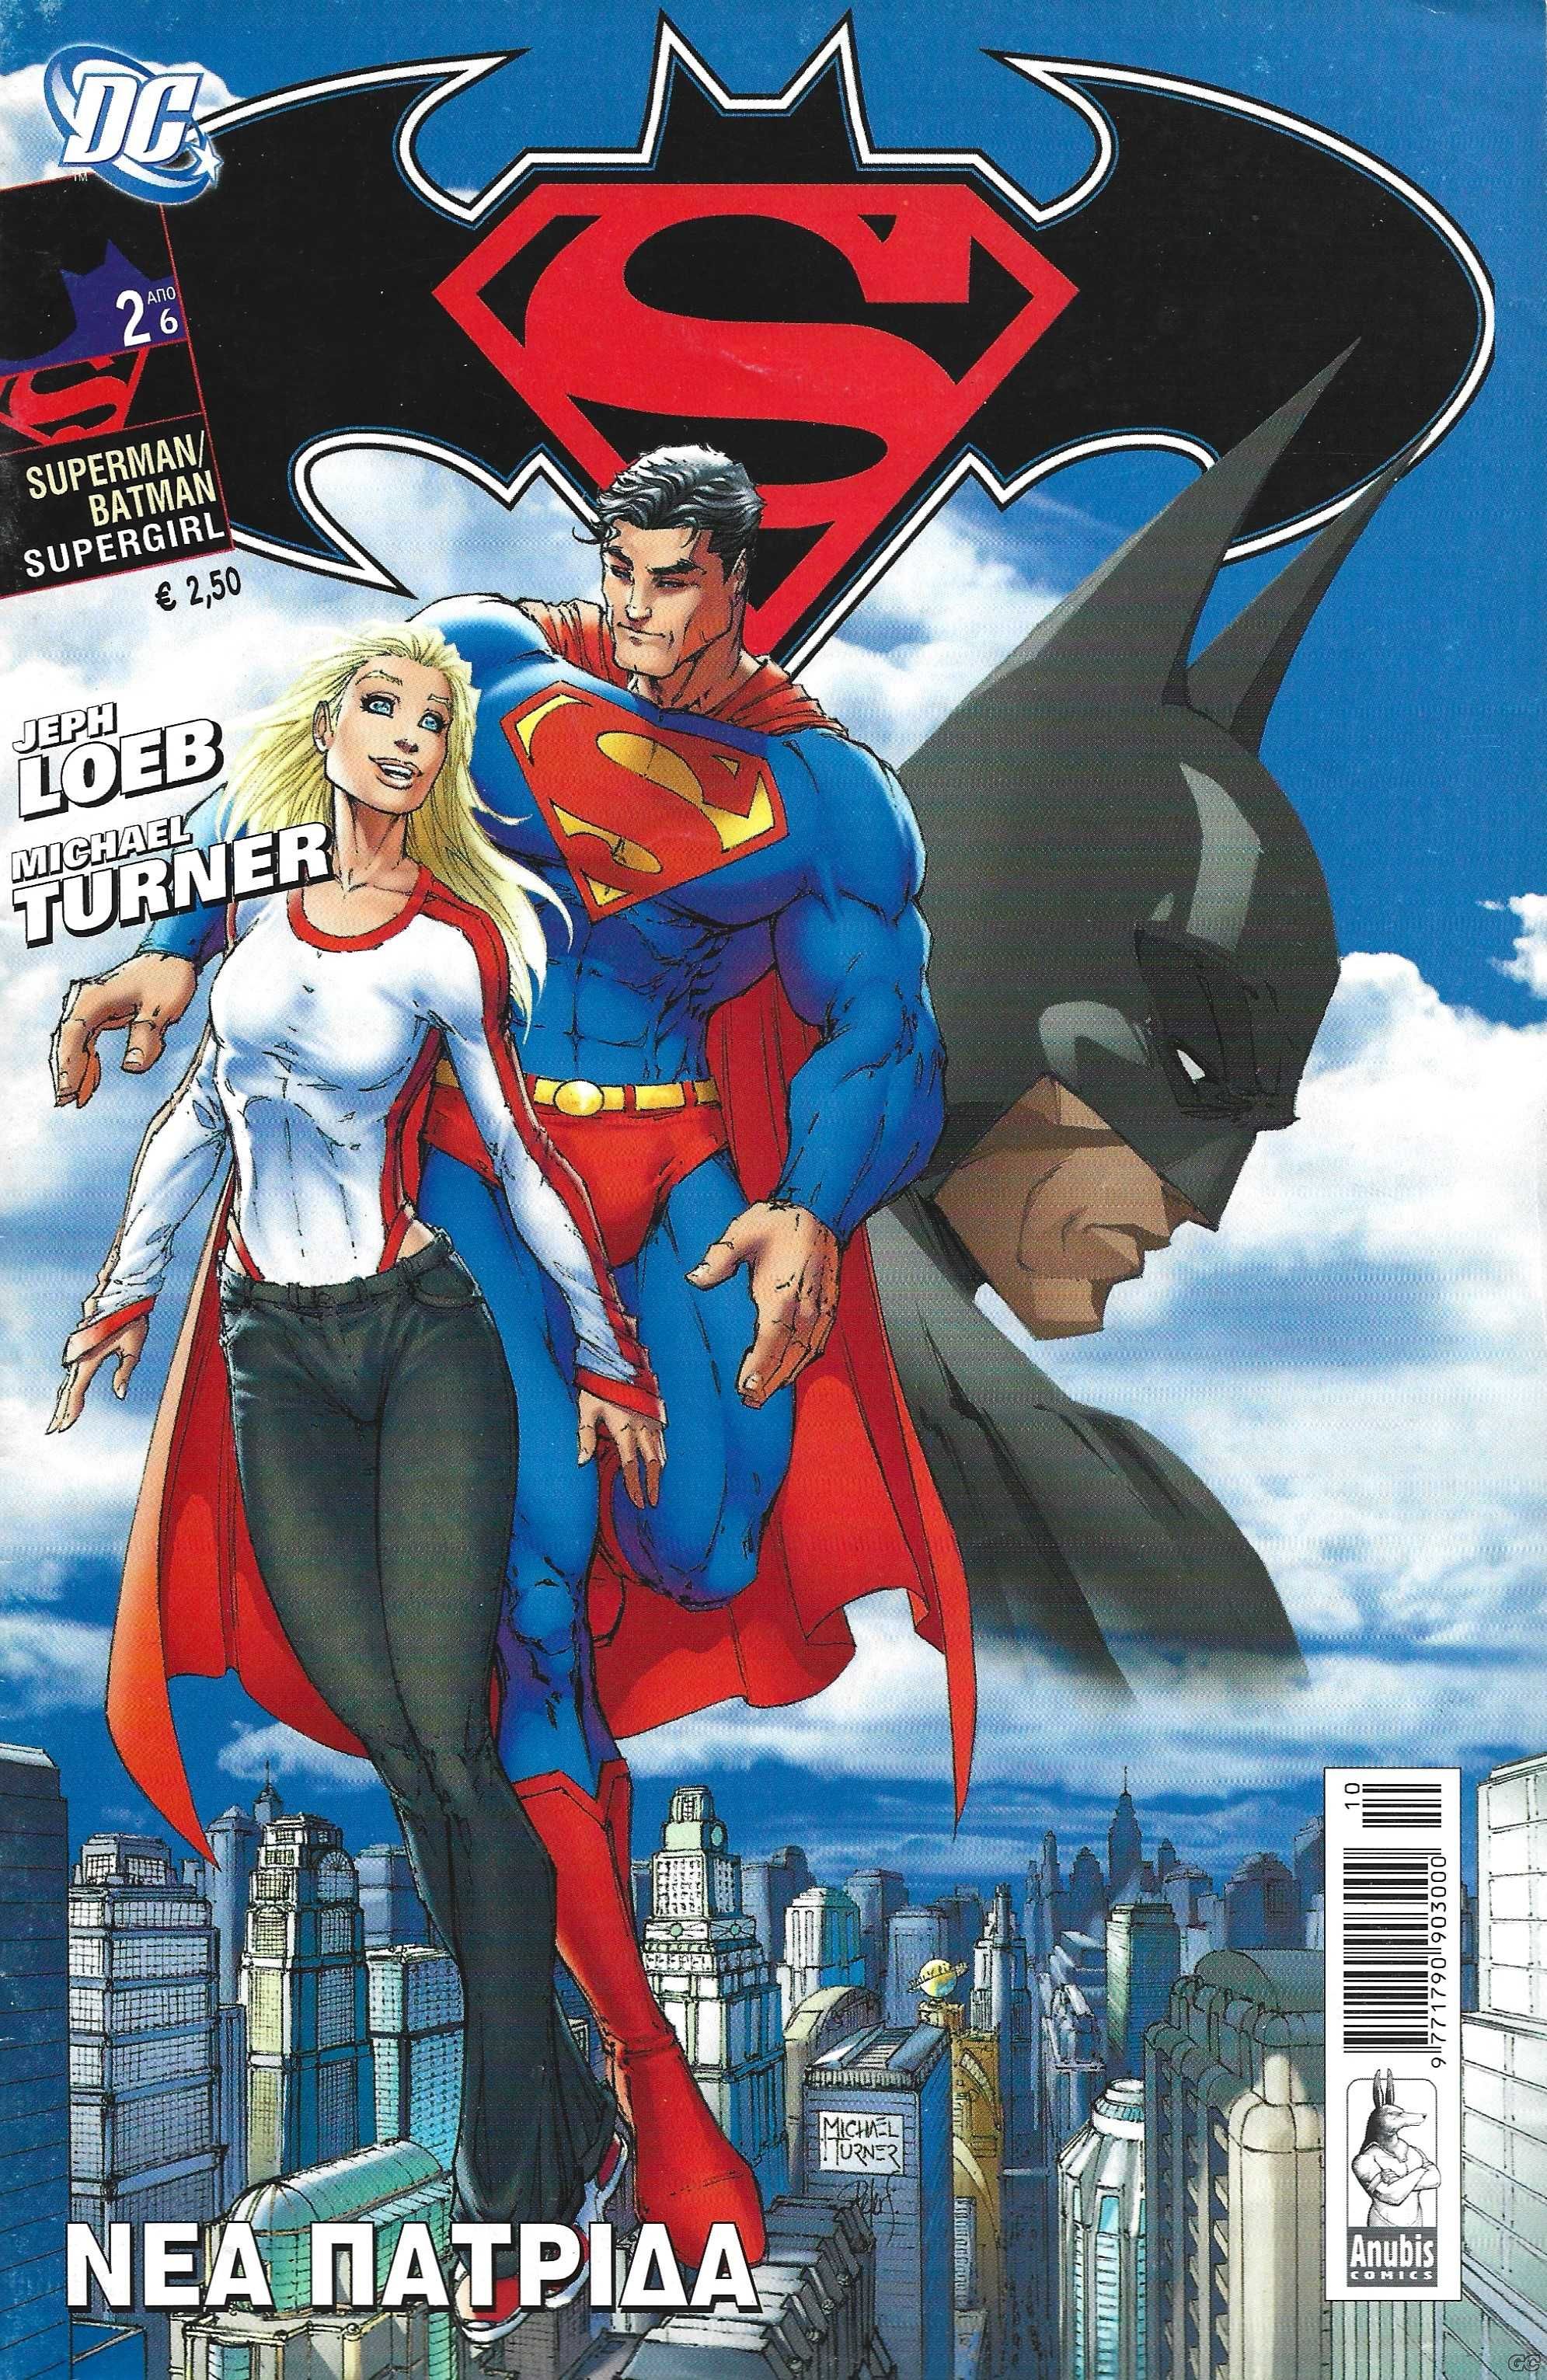 SupermanBatman_0002.jpg